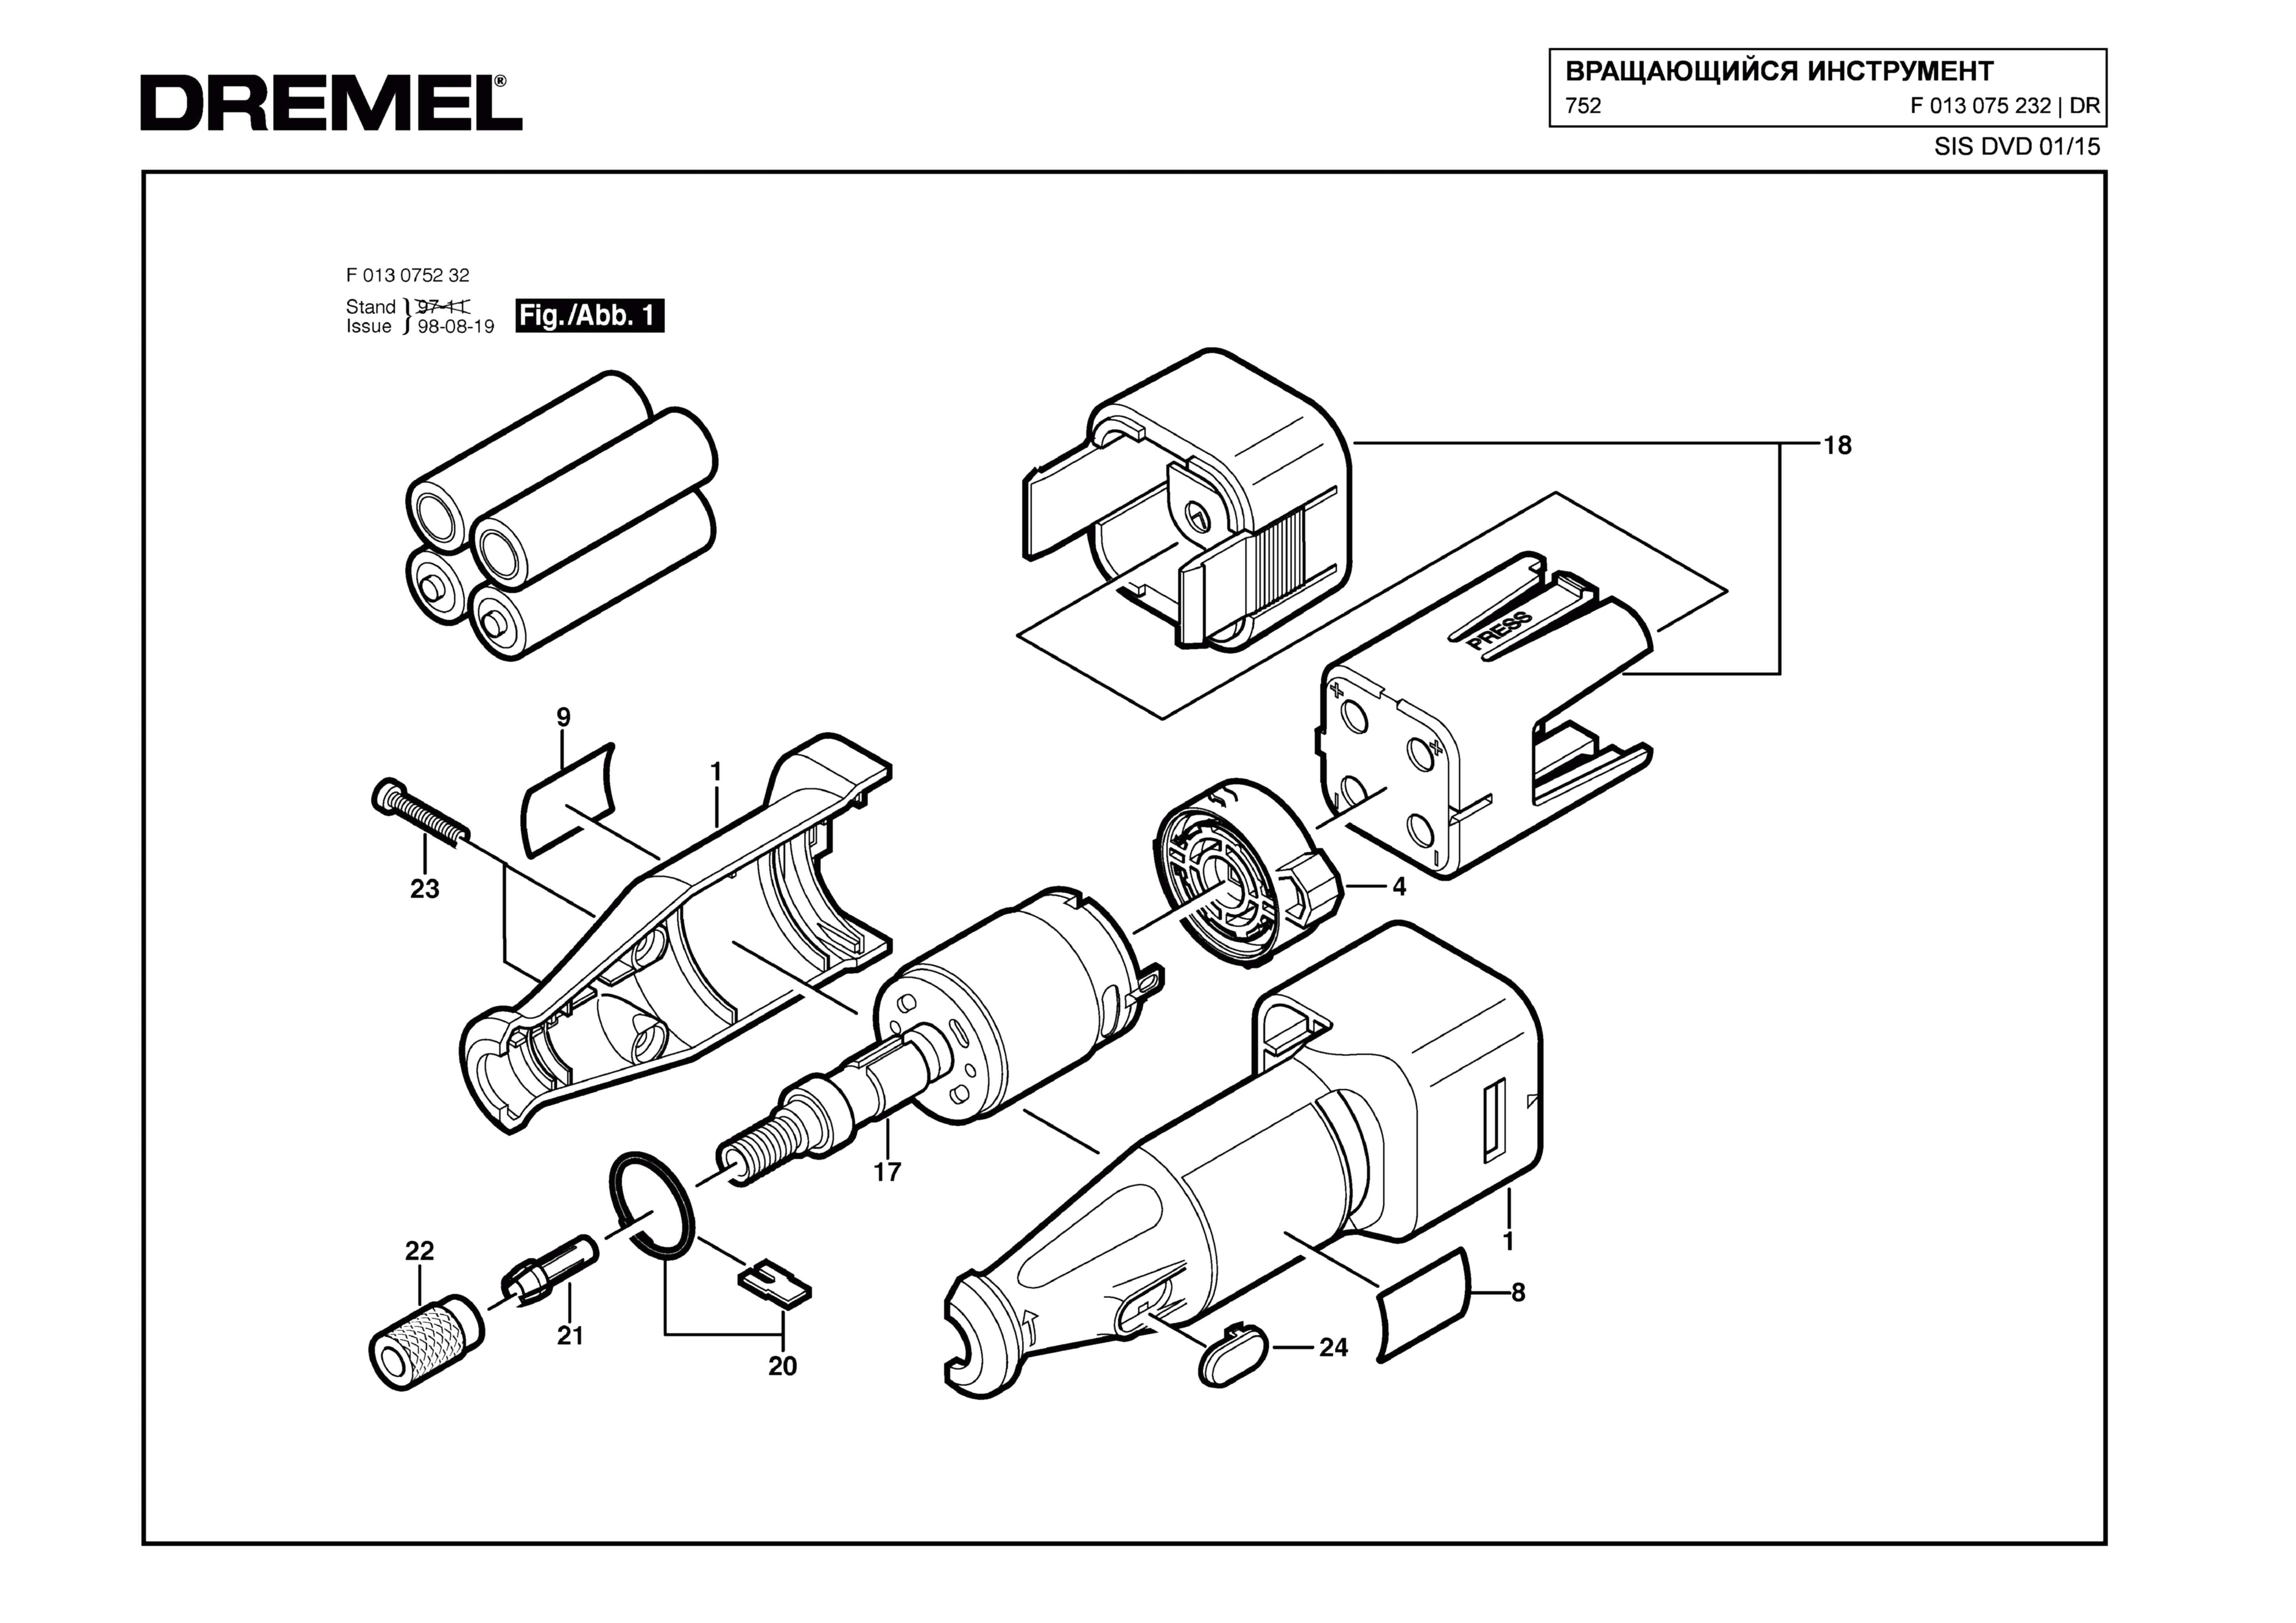 Шлифовальная машина Dremel 752 (ТИП F013075232)